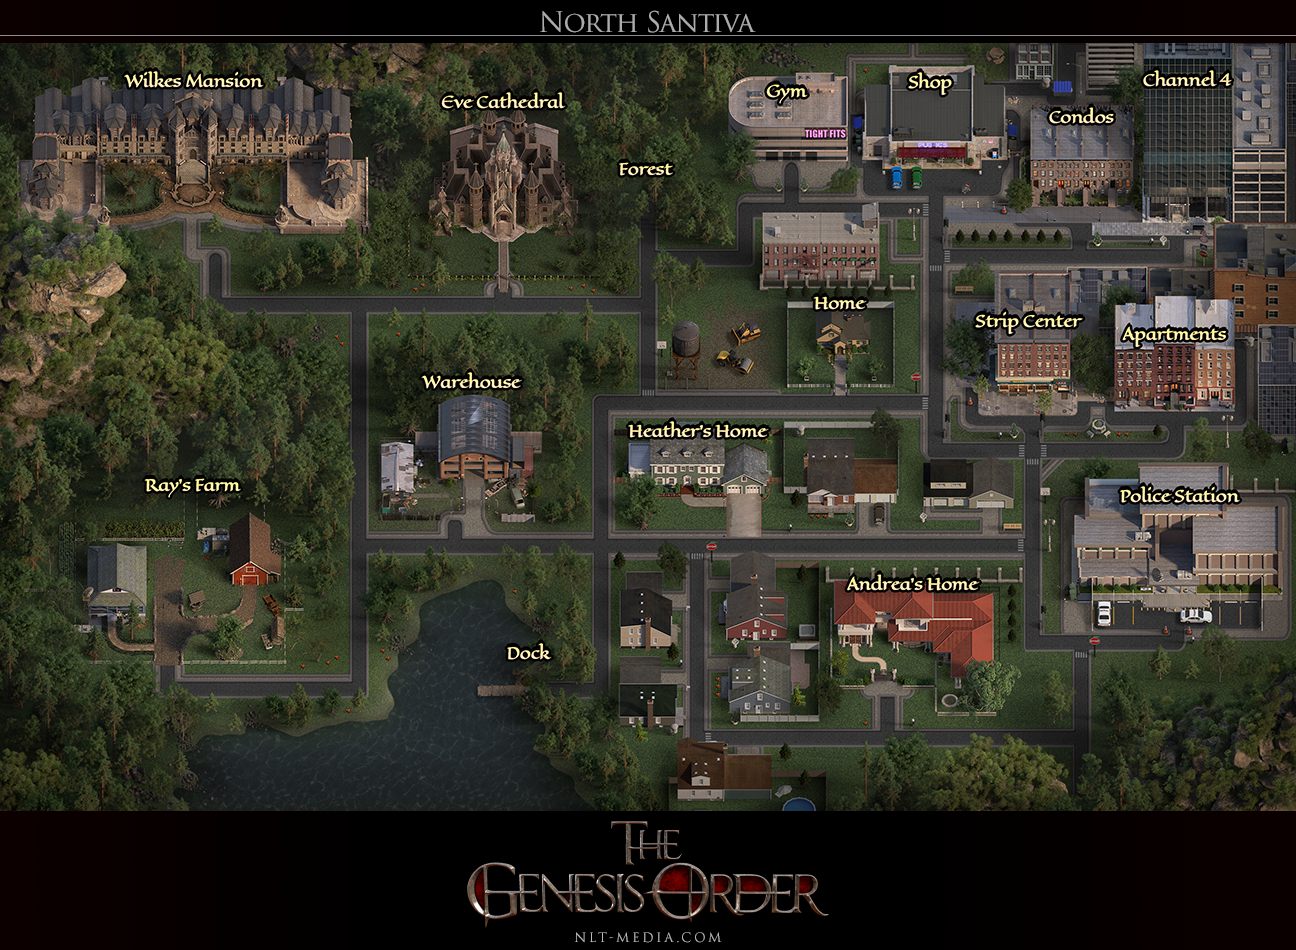 The genesis order games